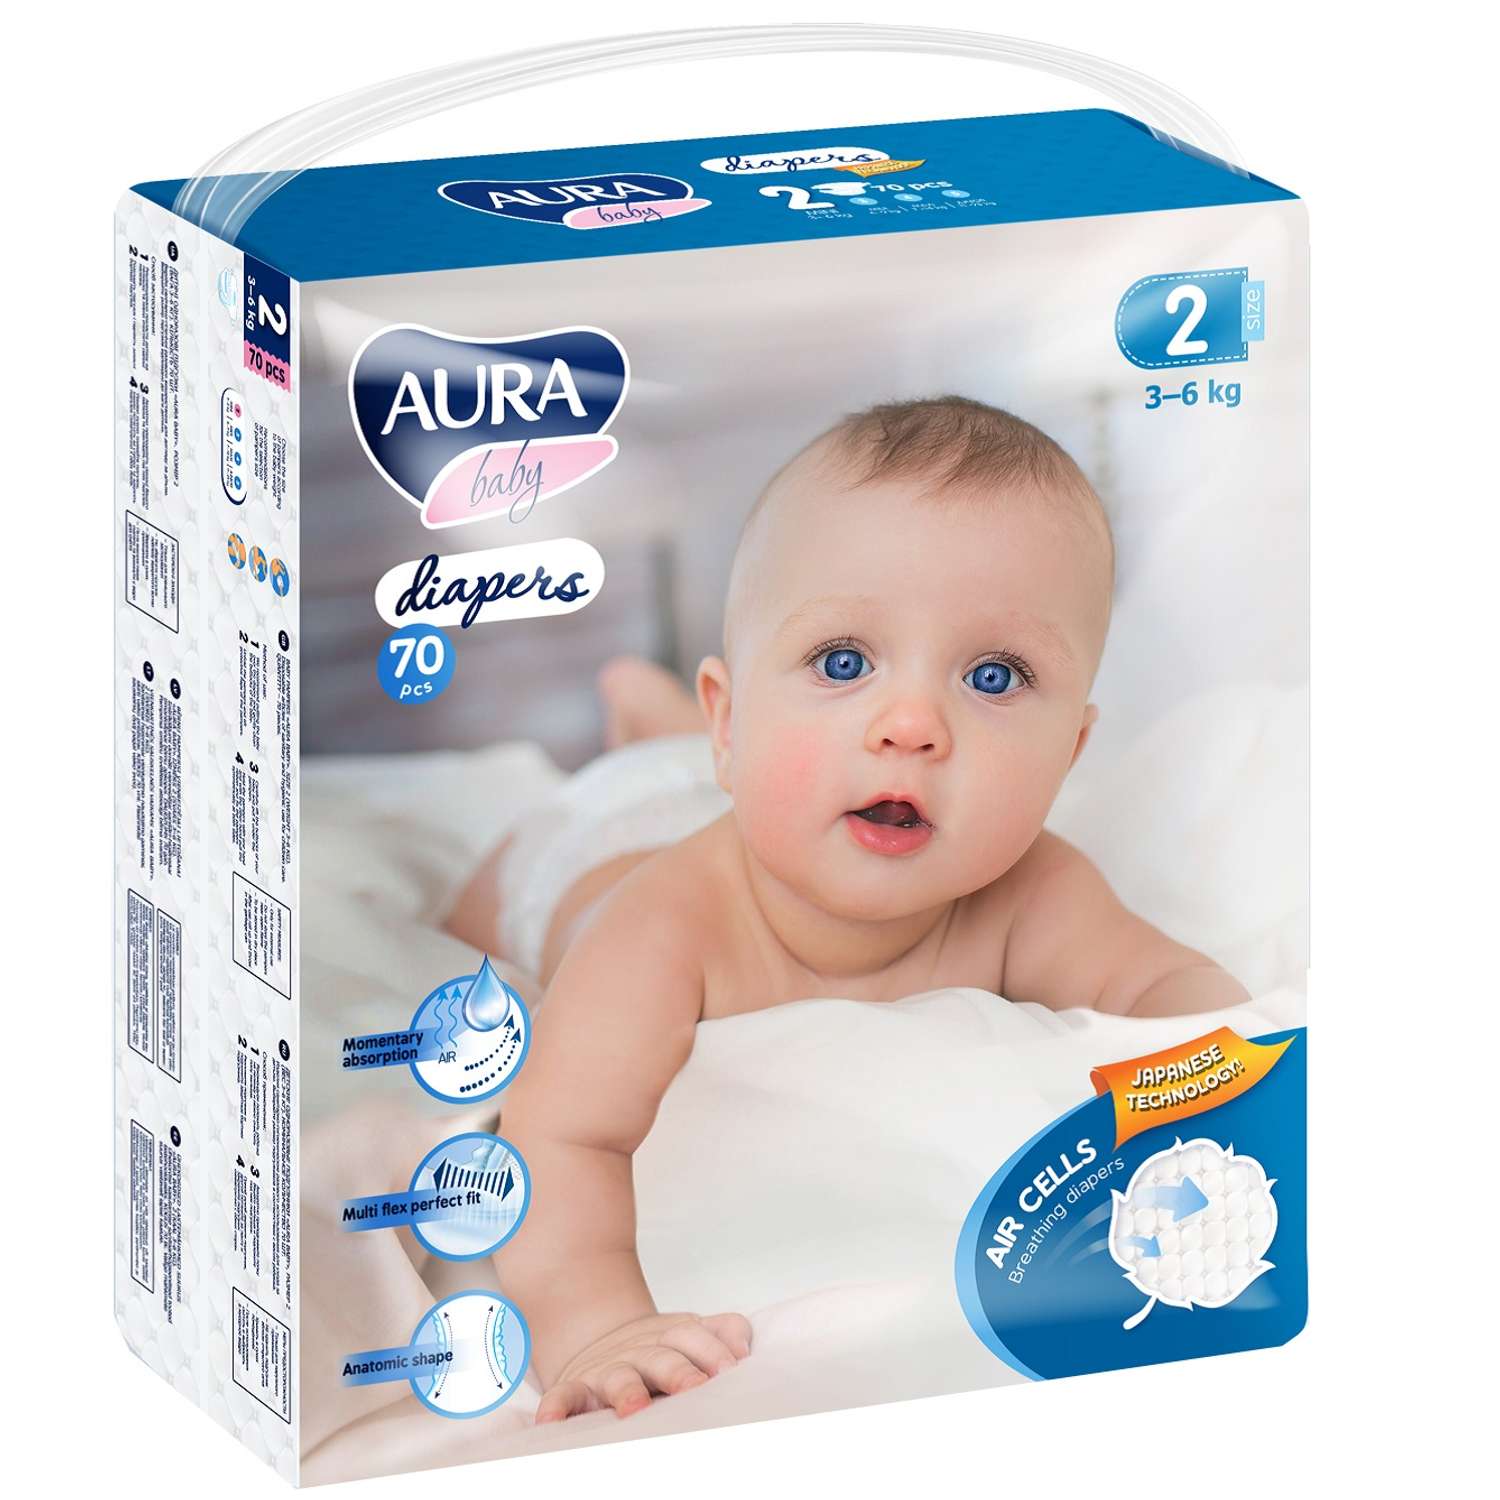 Подгузники AURA BABY одноразовые для детей 2/S 3-6 кг mega-pack 70шт - фото 1